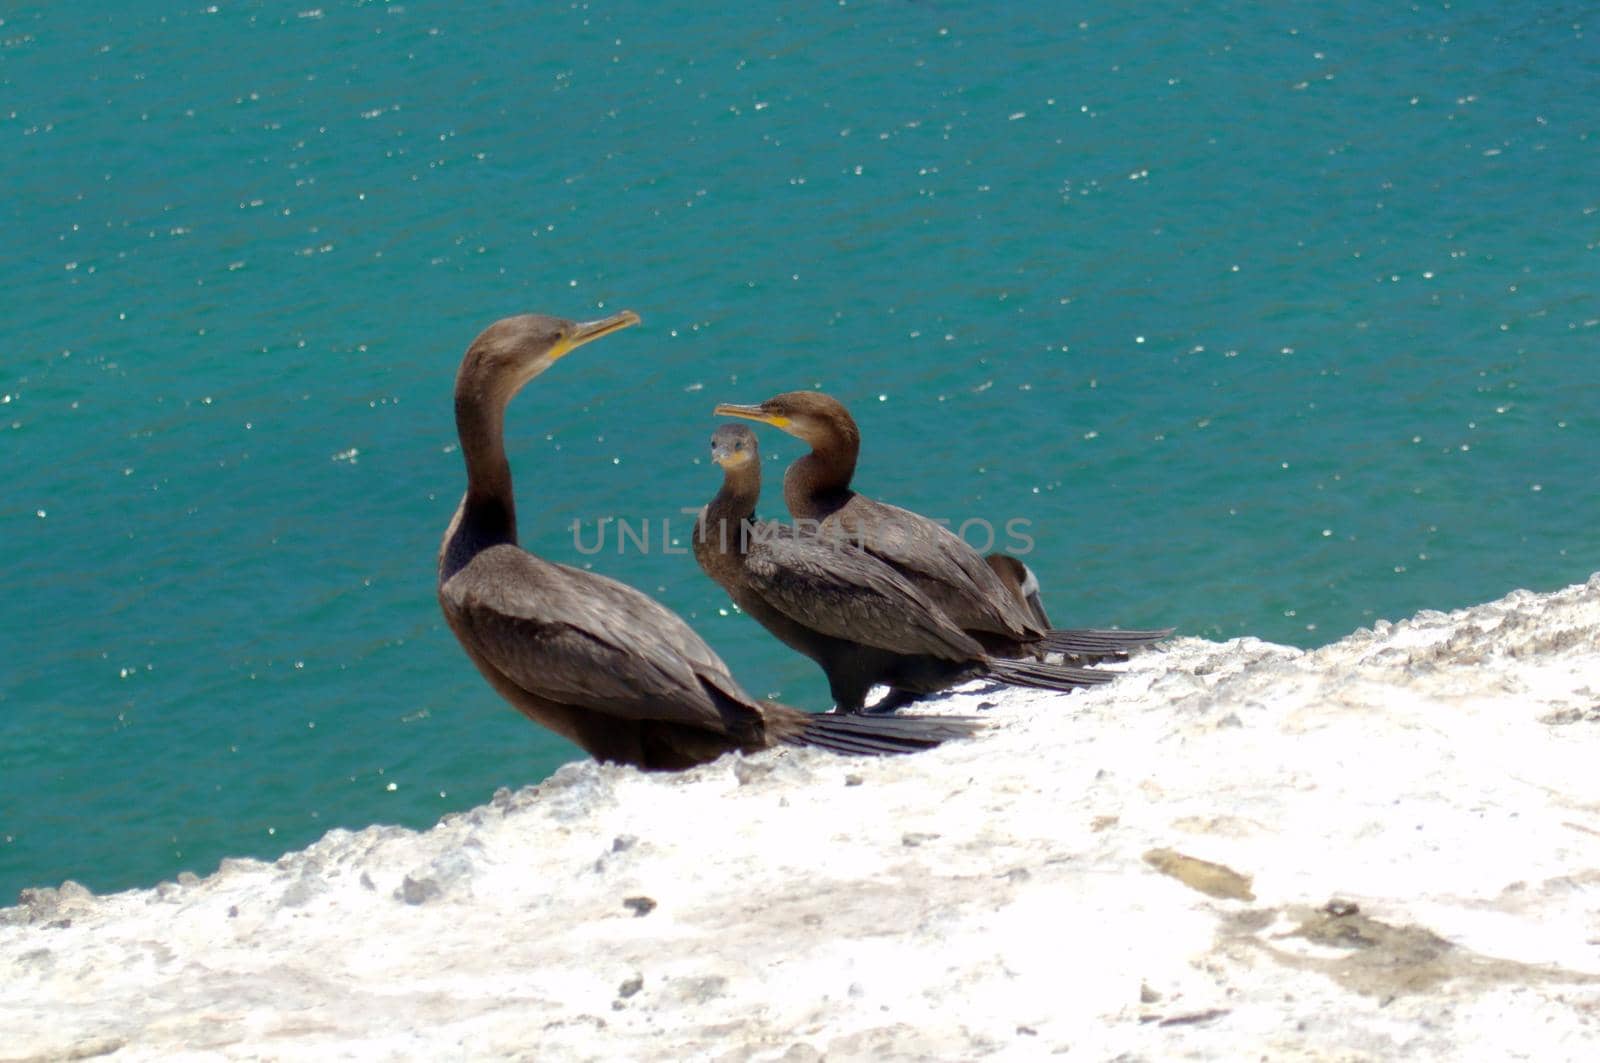 Black cormorants perched on the rocks in Juan Lopez, Antofagasta, Chlie.